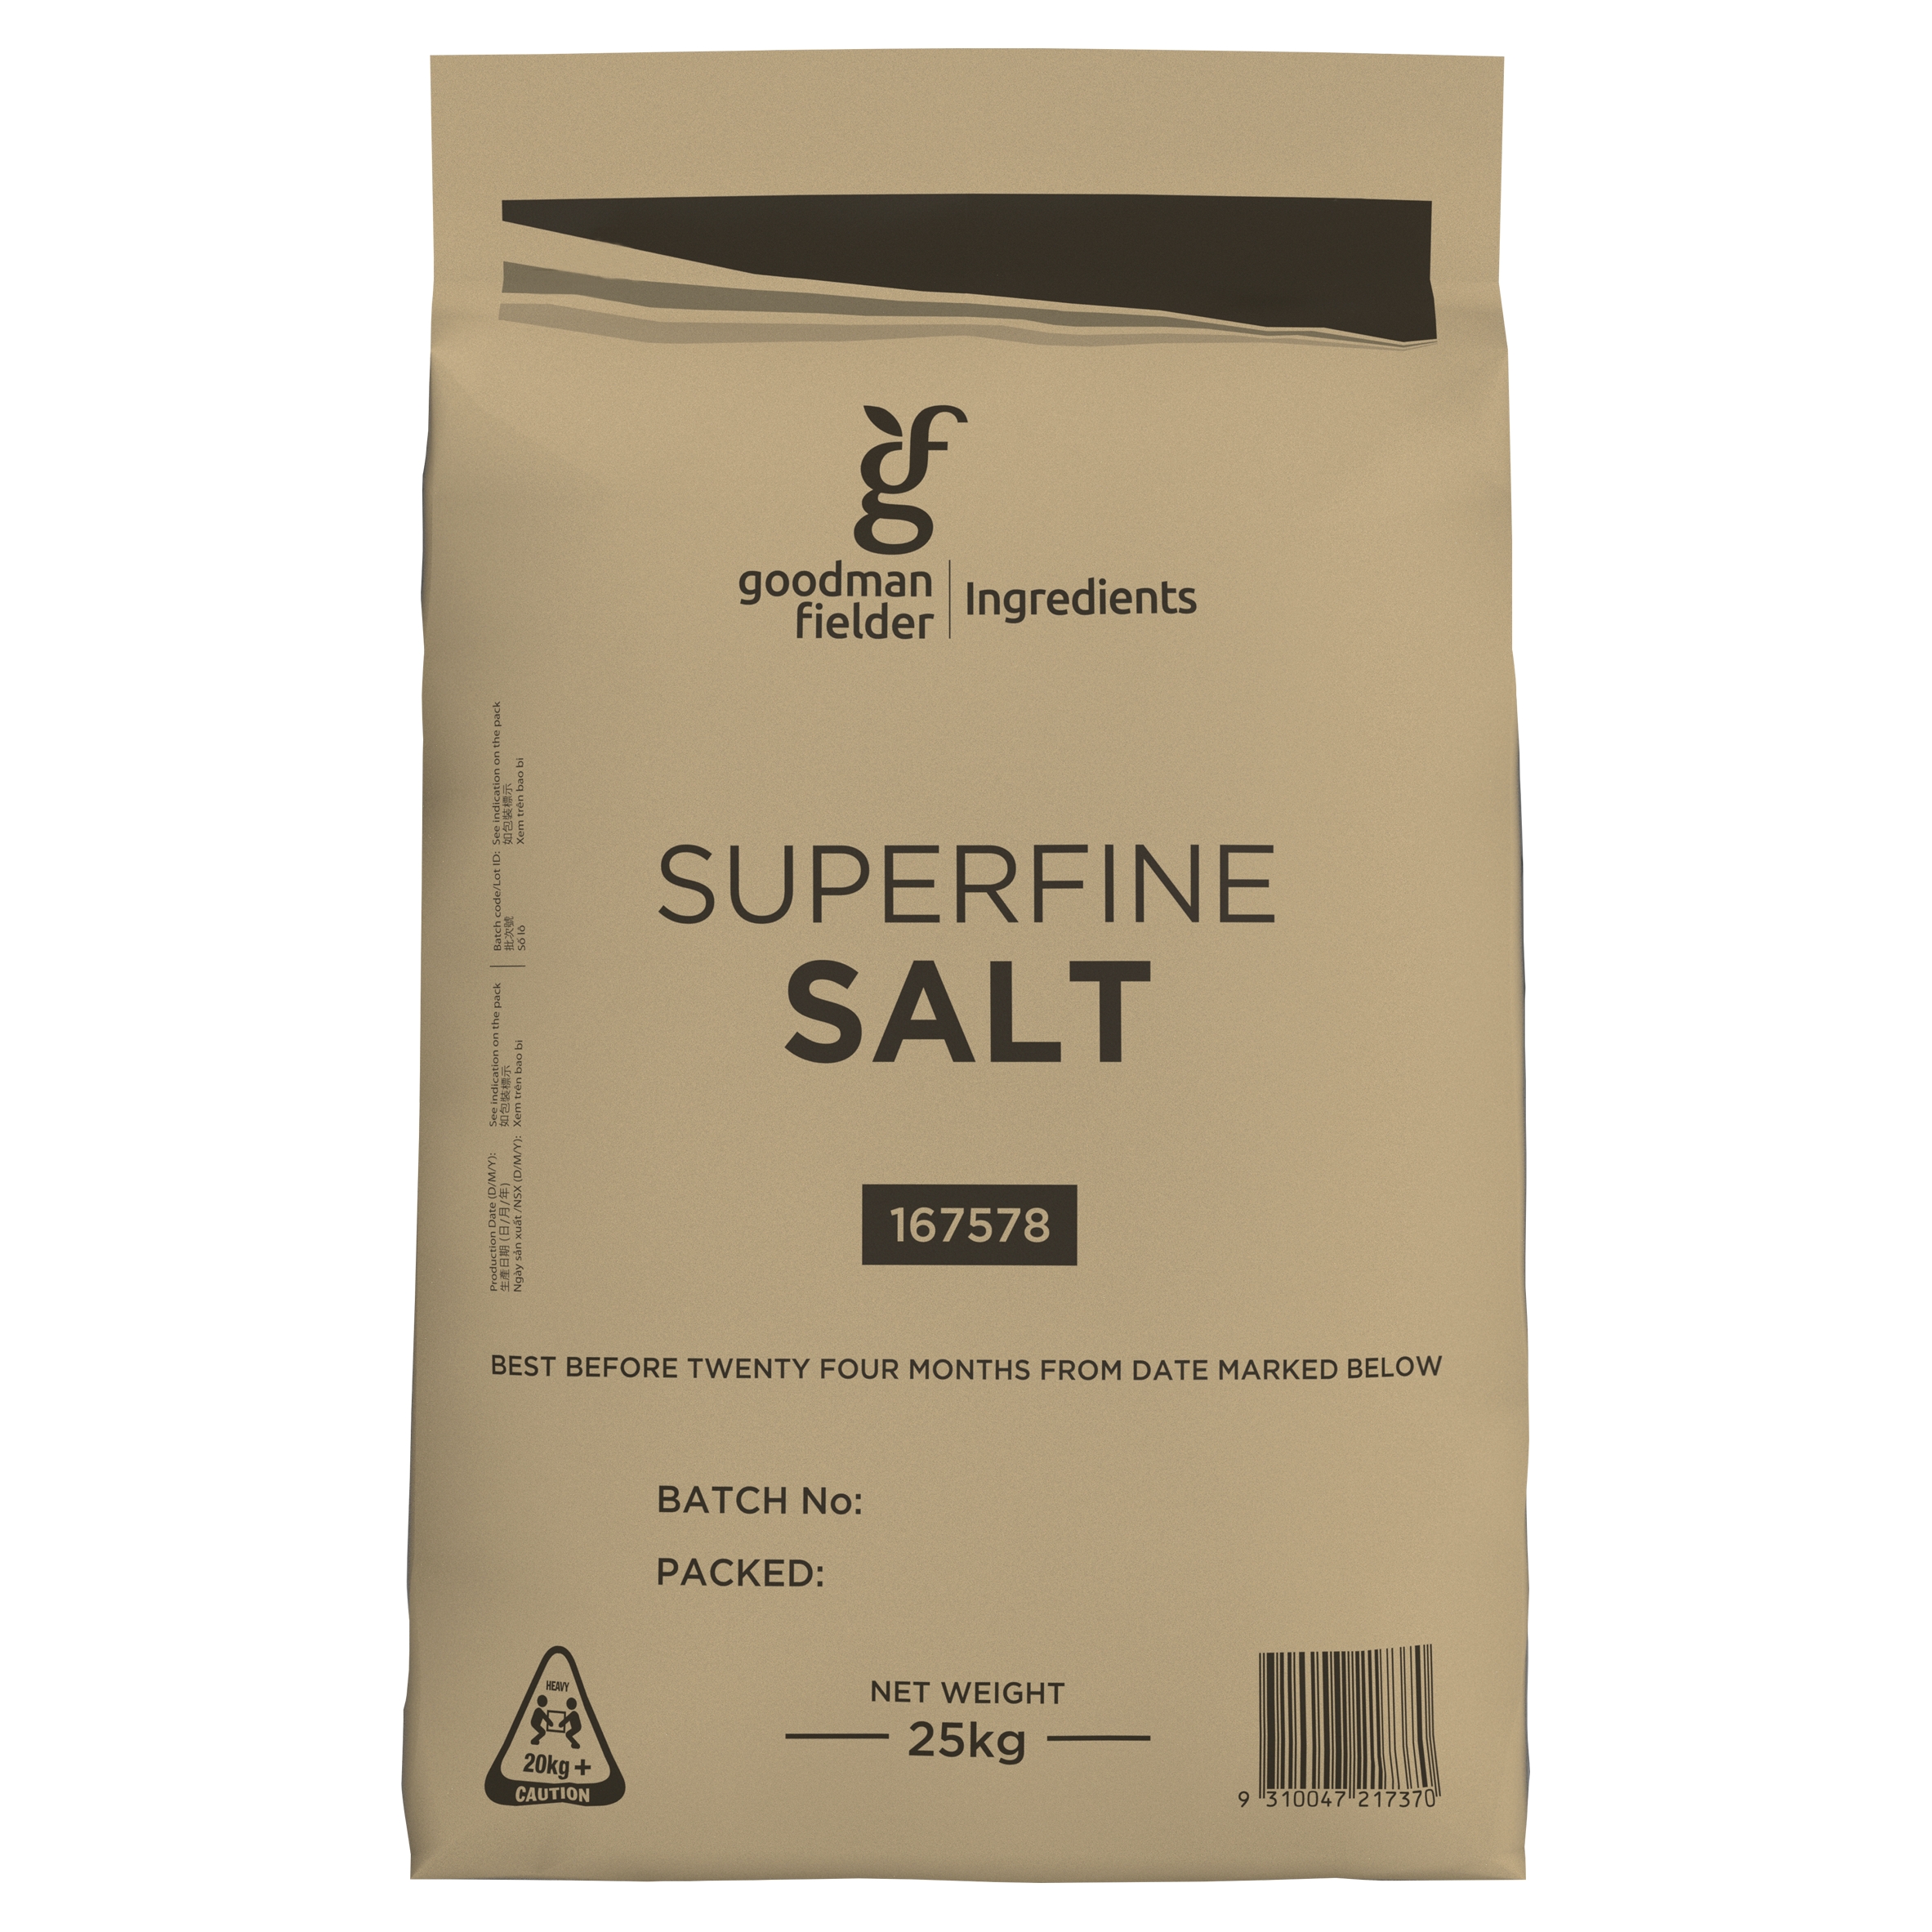 Goodman Fielder Ingredients Superfine Salt 25kg